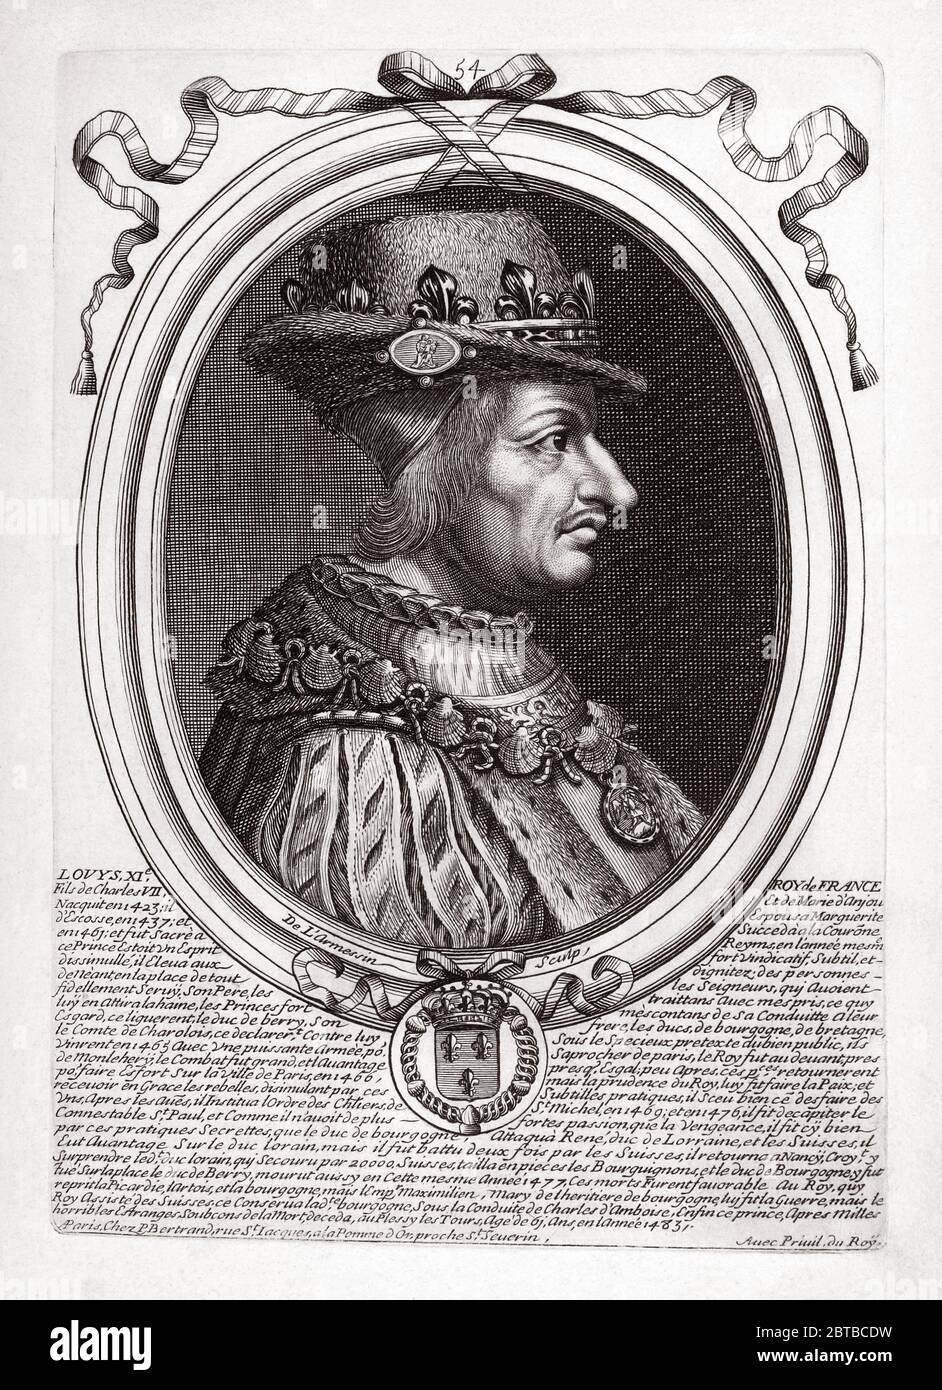 1480 ca, FRANCIA: Il re francese LUIGI XI Valois (1423-1483) dit le Prudent . Padre di Re Carlo VIII . Ritratto inciso di NICOLAS de LARMESSIN ( 1632 - 1694 9 , pubblicato nel 1690 - NOBILITY - NOBILI francesi - Nobiltà francese - FRANCIA - illustrazione - illustrazione - incisione - LUIGI XI Re di Francia -- ARCHIVIO GBB Foto Stock